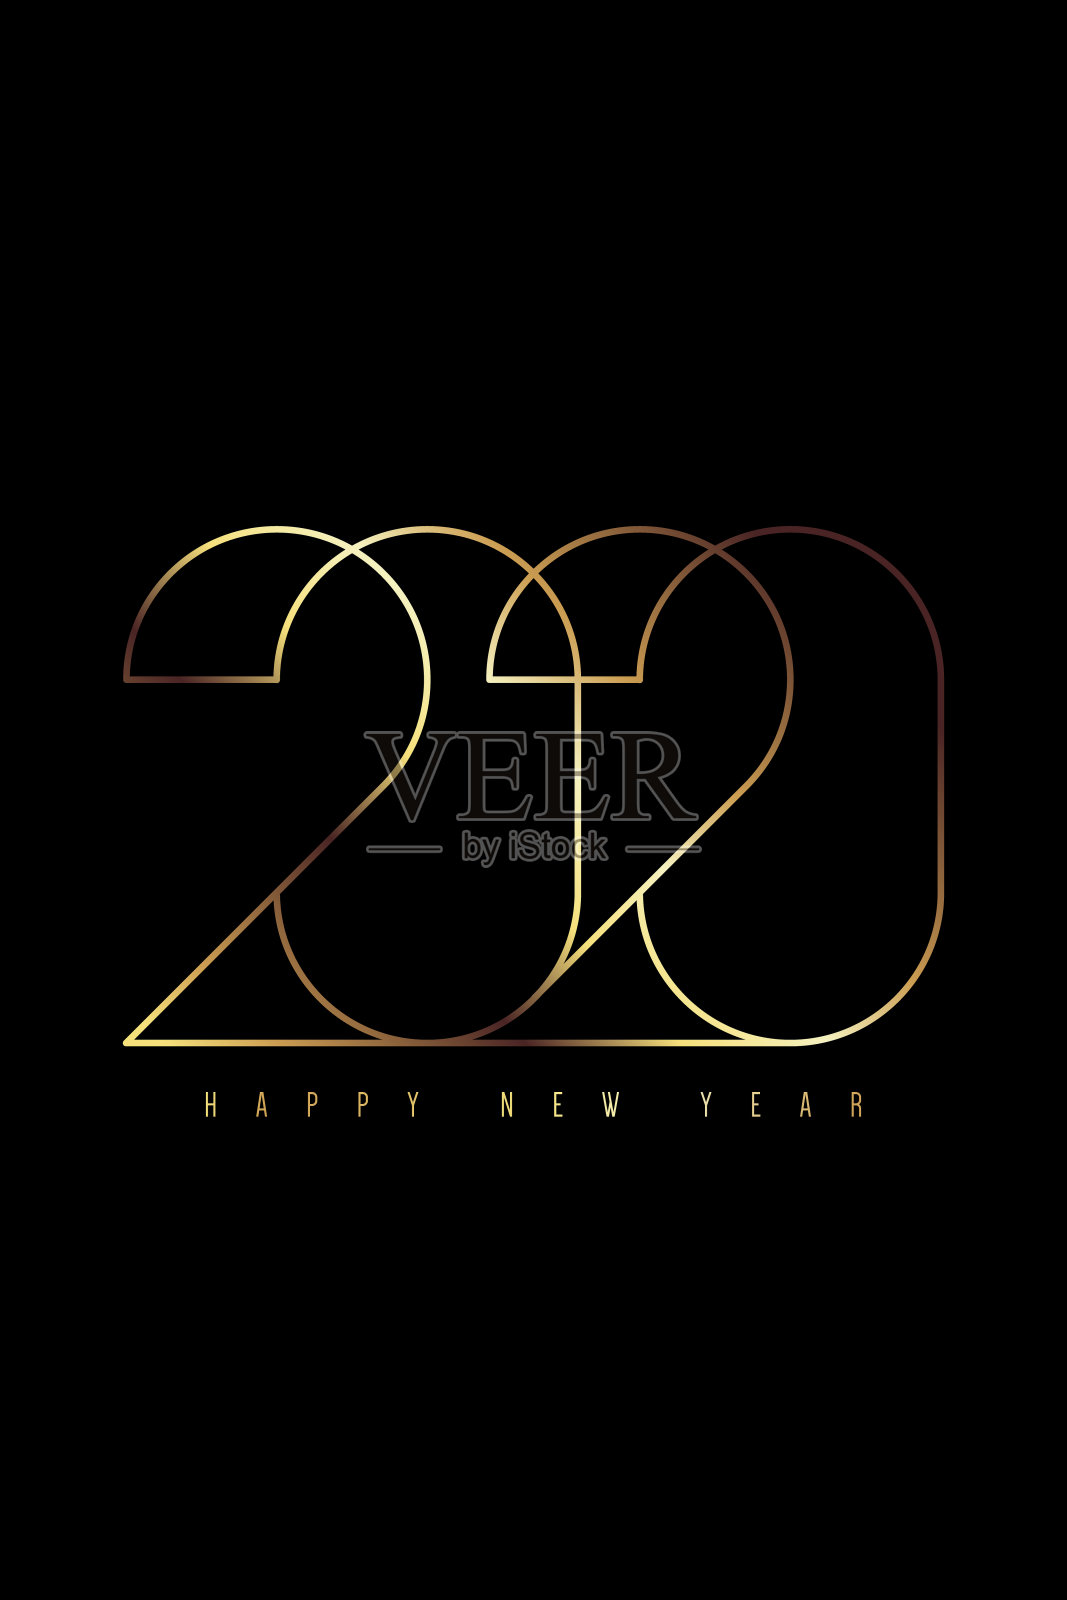 2020年新年快乐的概念装饰与奢华的黄金排版设计模板素材